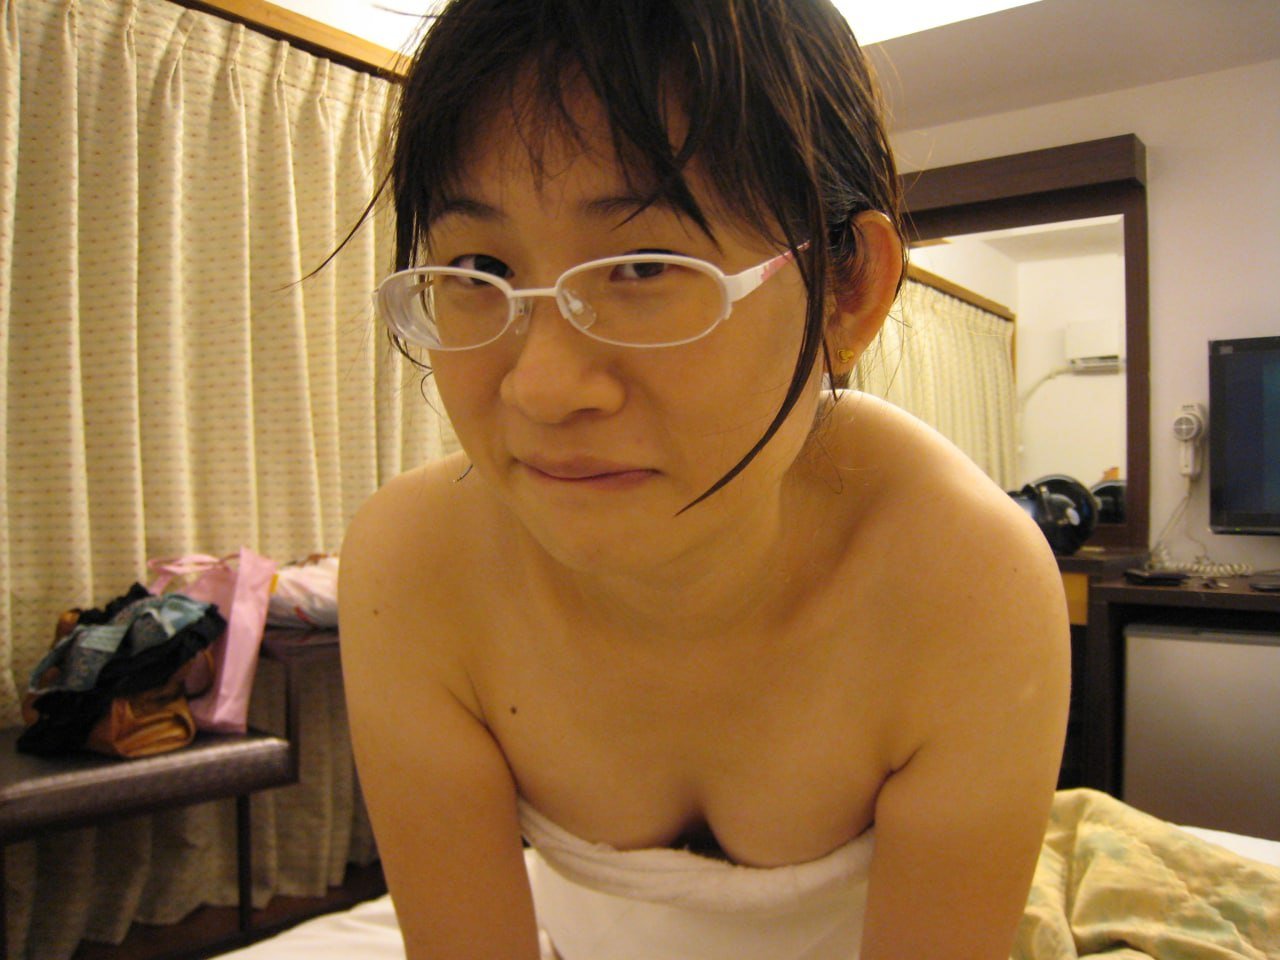 Ugly Asian nude - Porn Videos & Photos - EroMe